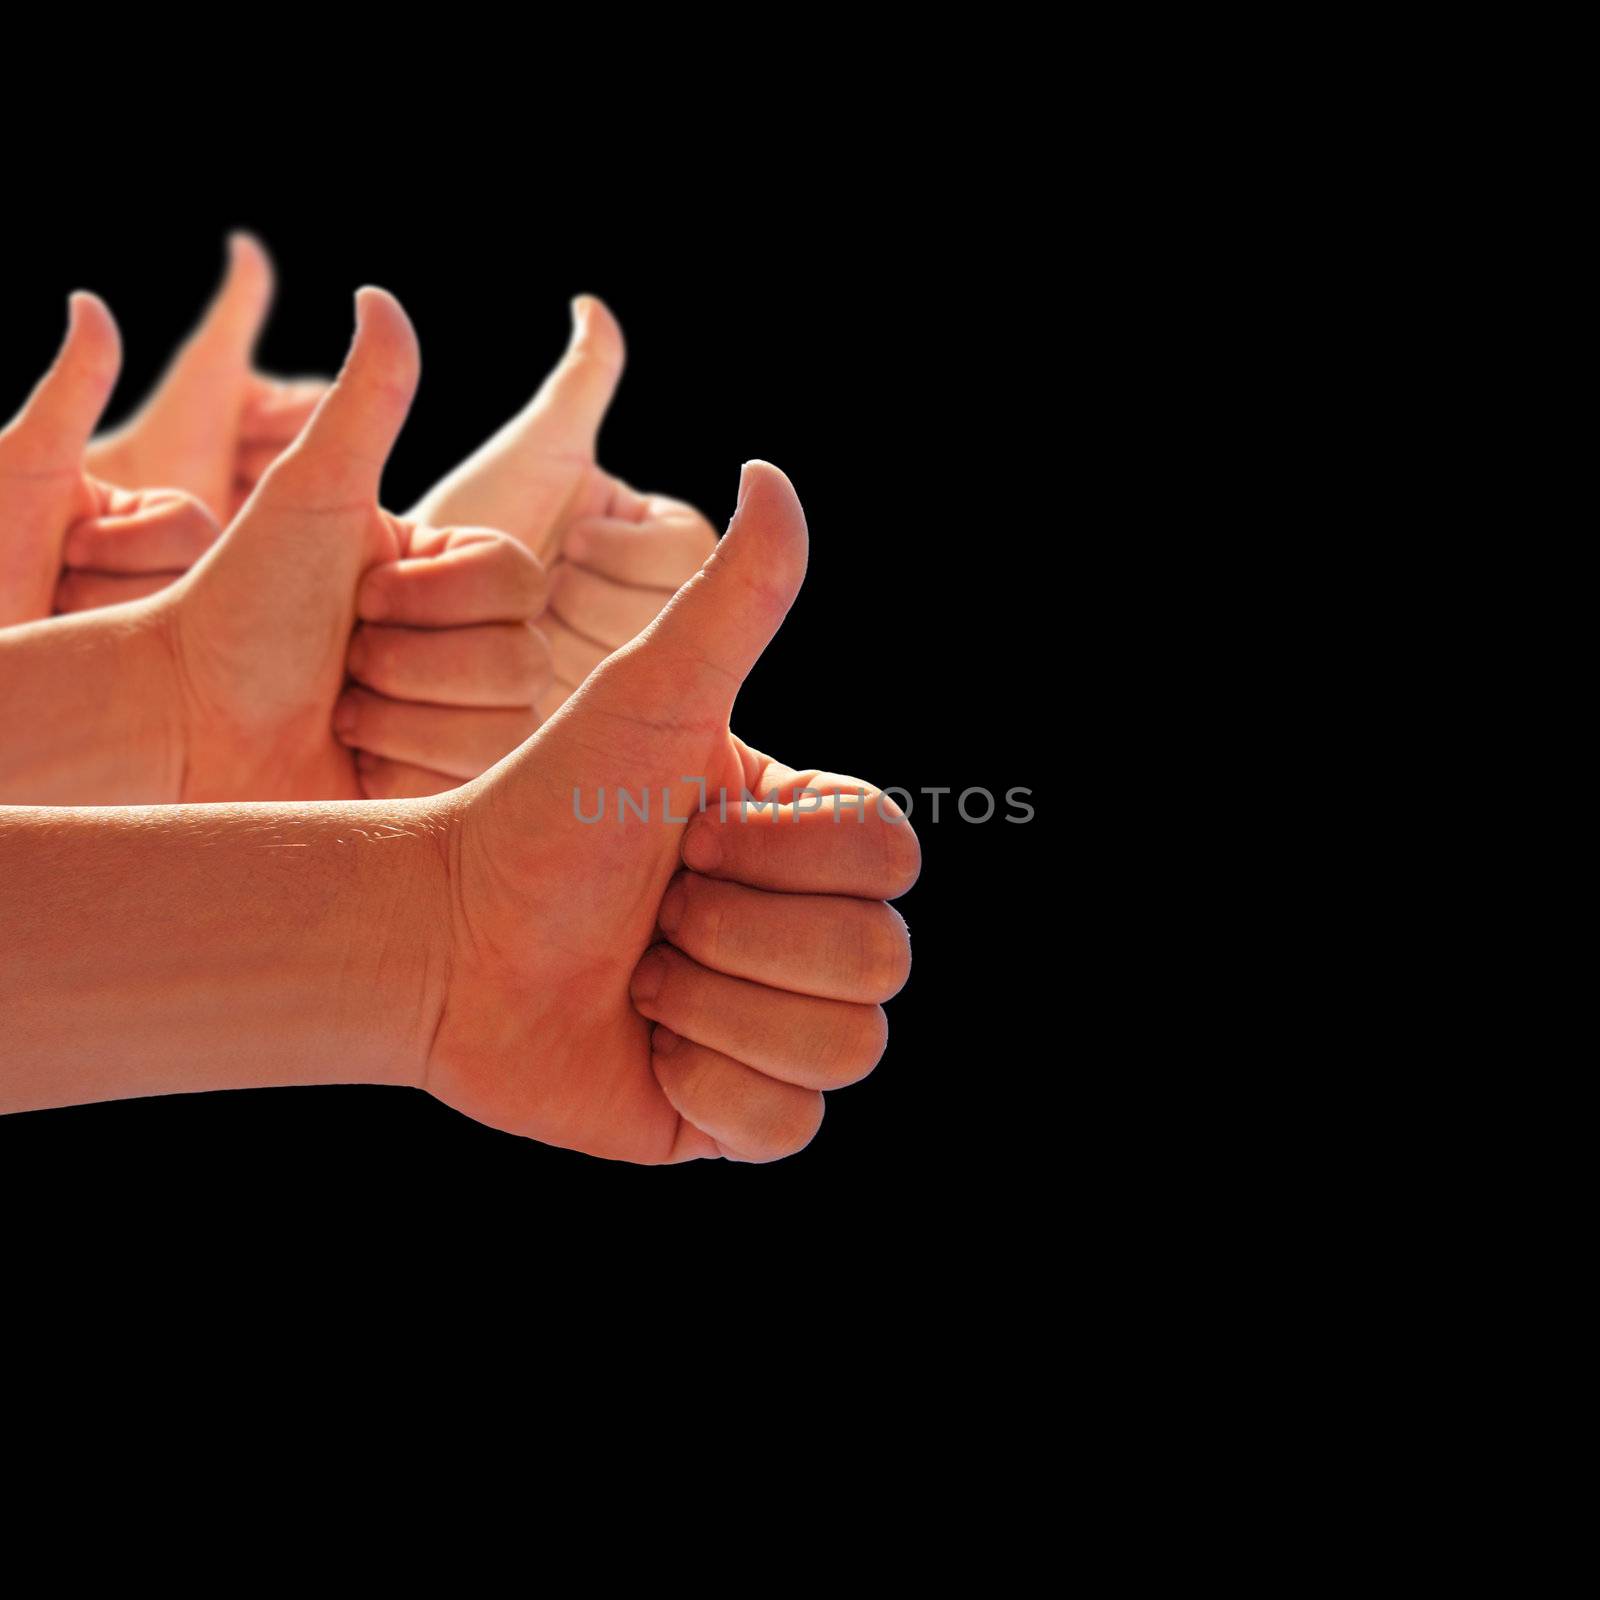 men's hands make thumbs up 